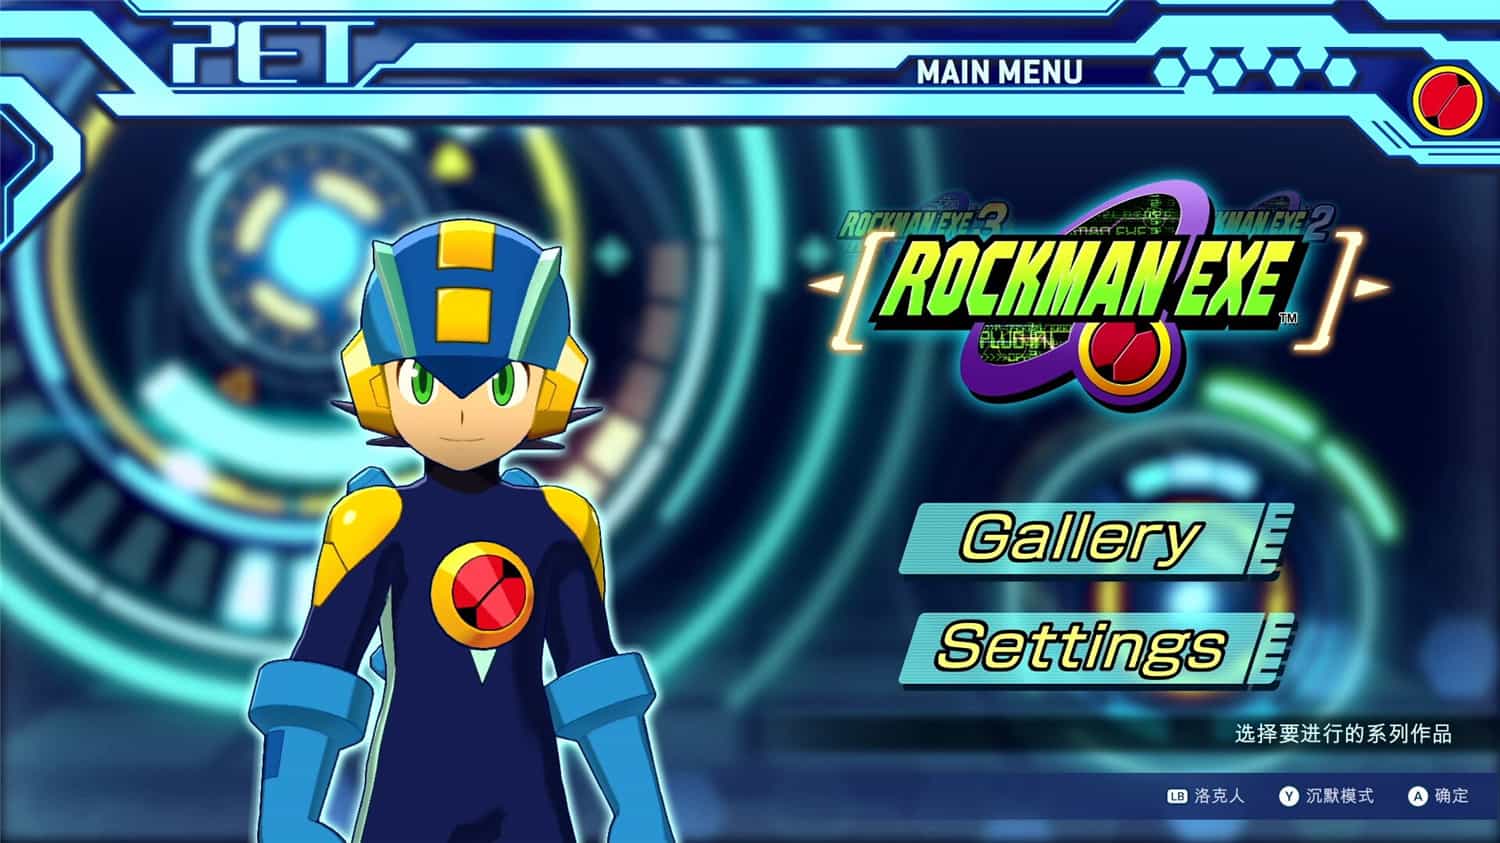 《洛克人EXE合集1/Mega Man Battle Network Legacy Collection Vol 1》免安装中文版|迅雷百度云下载